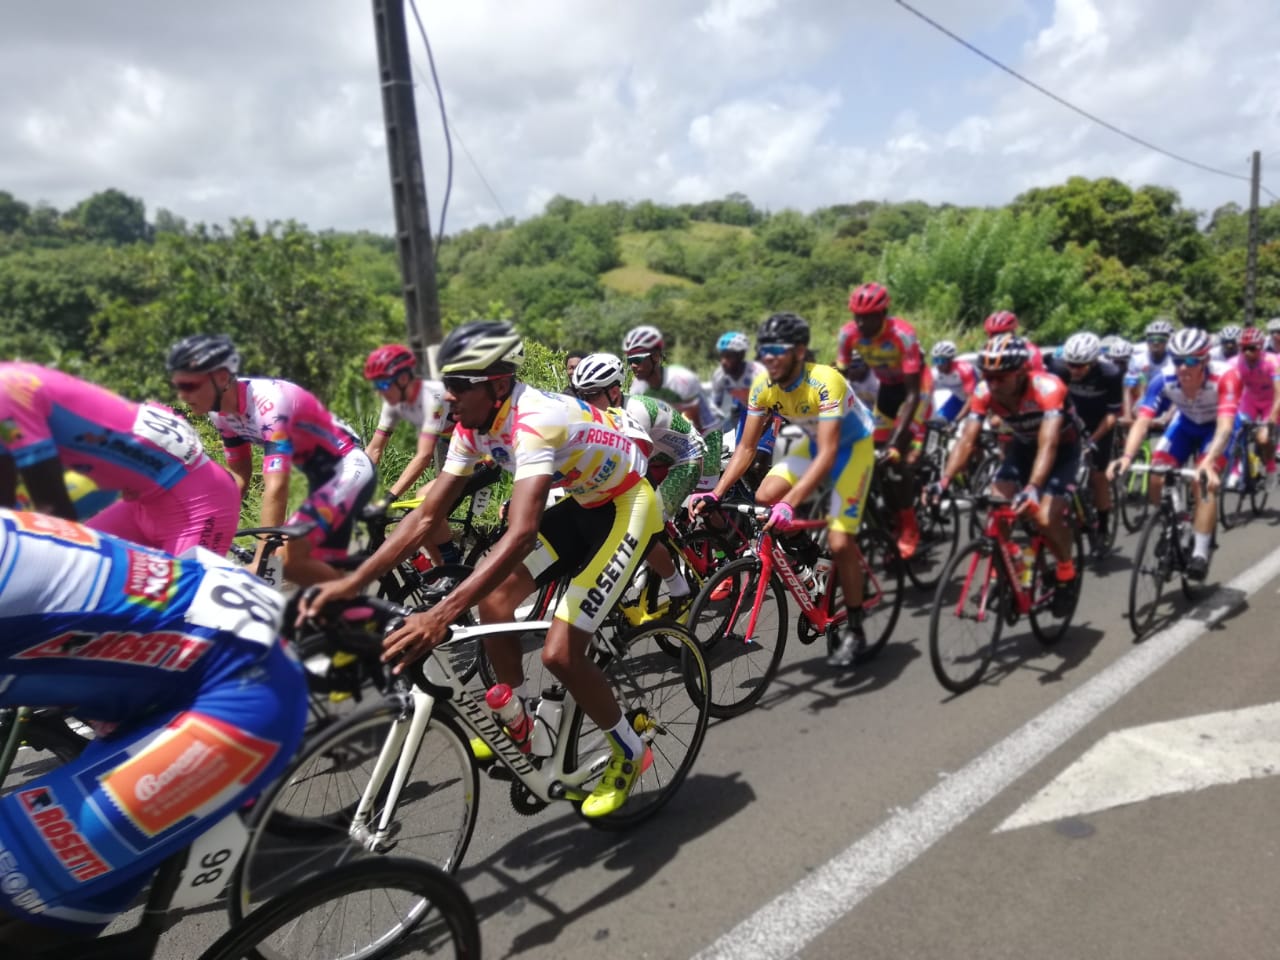     Route cycliste de Martinique : une dernière à suspens

